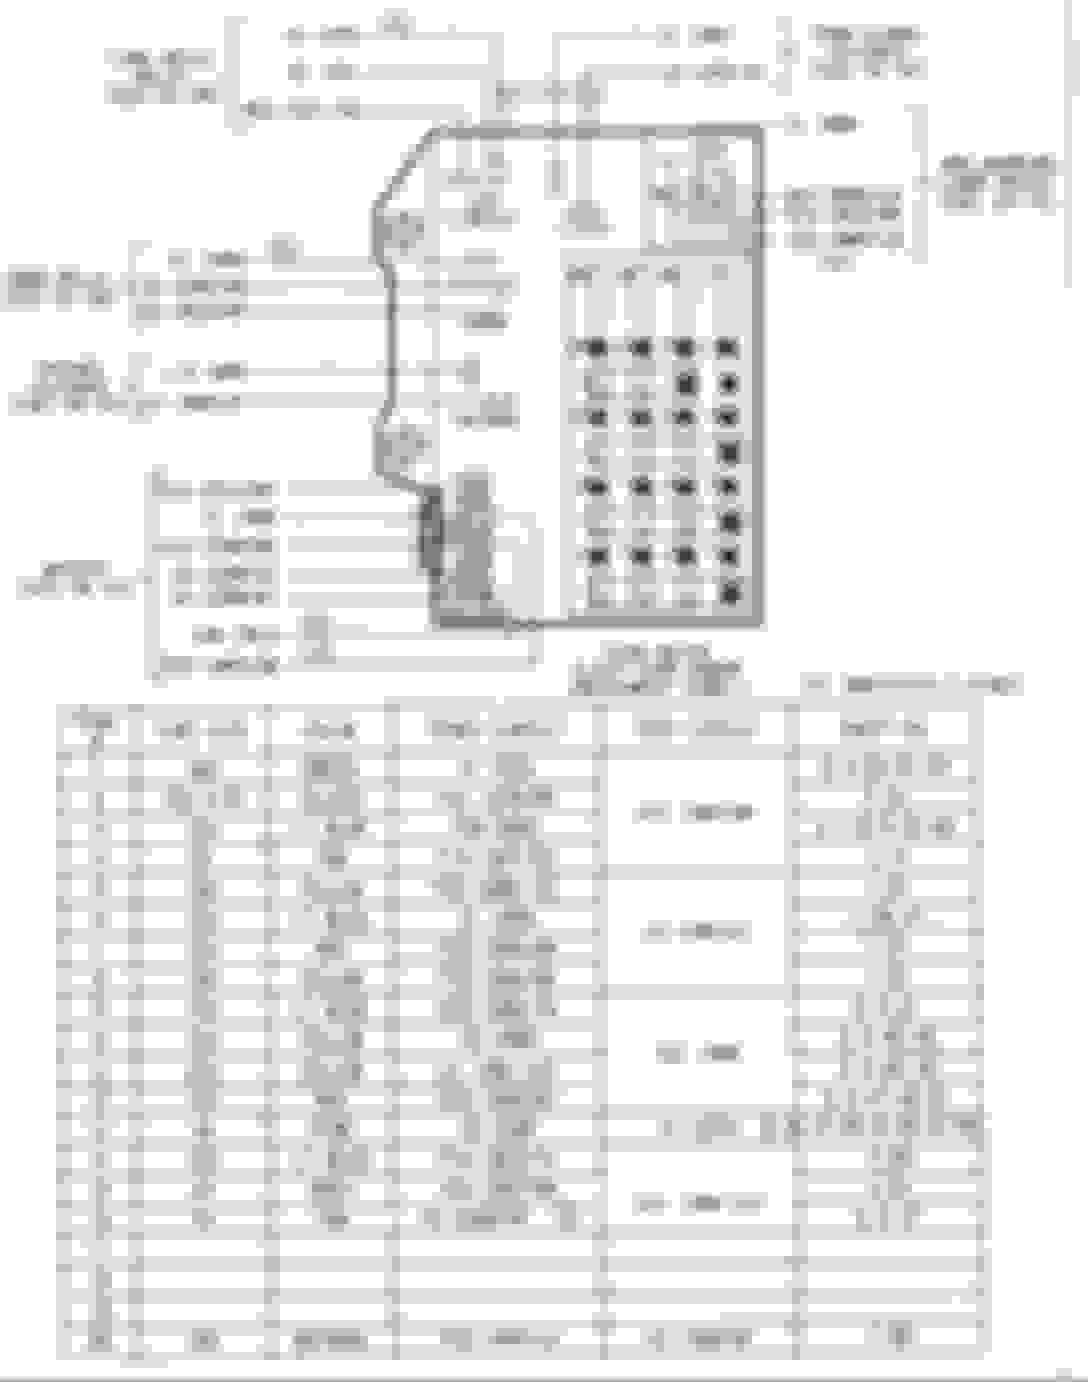 92 dodge dakota wiring diagram database wiring diagram sample Dodge Power Ram 150 